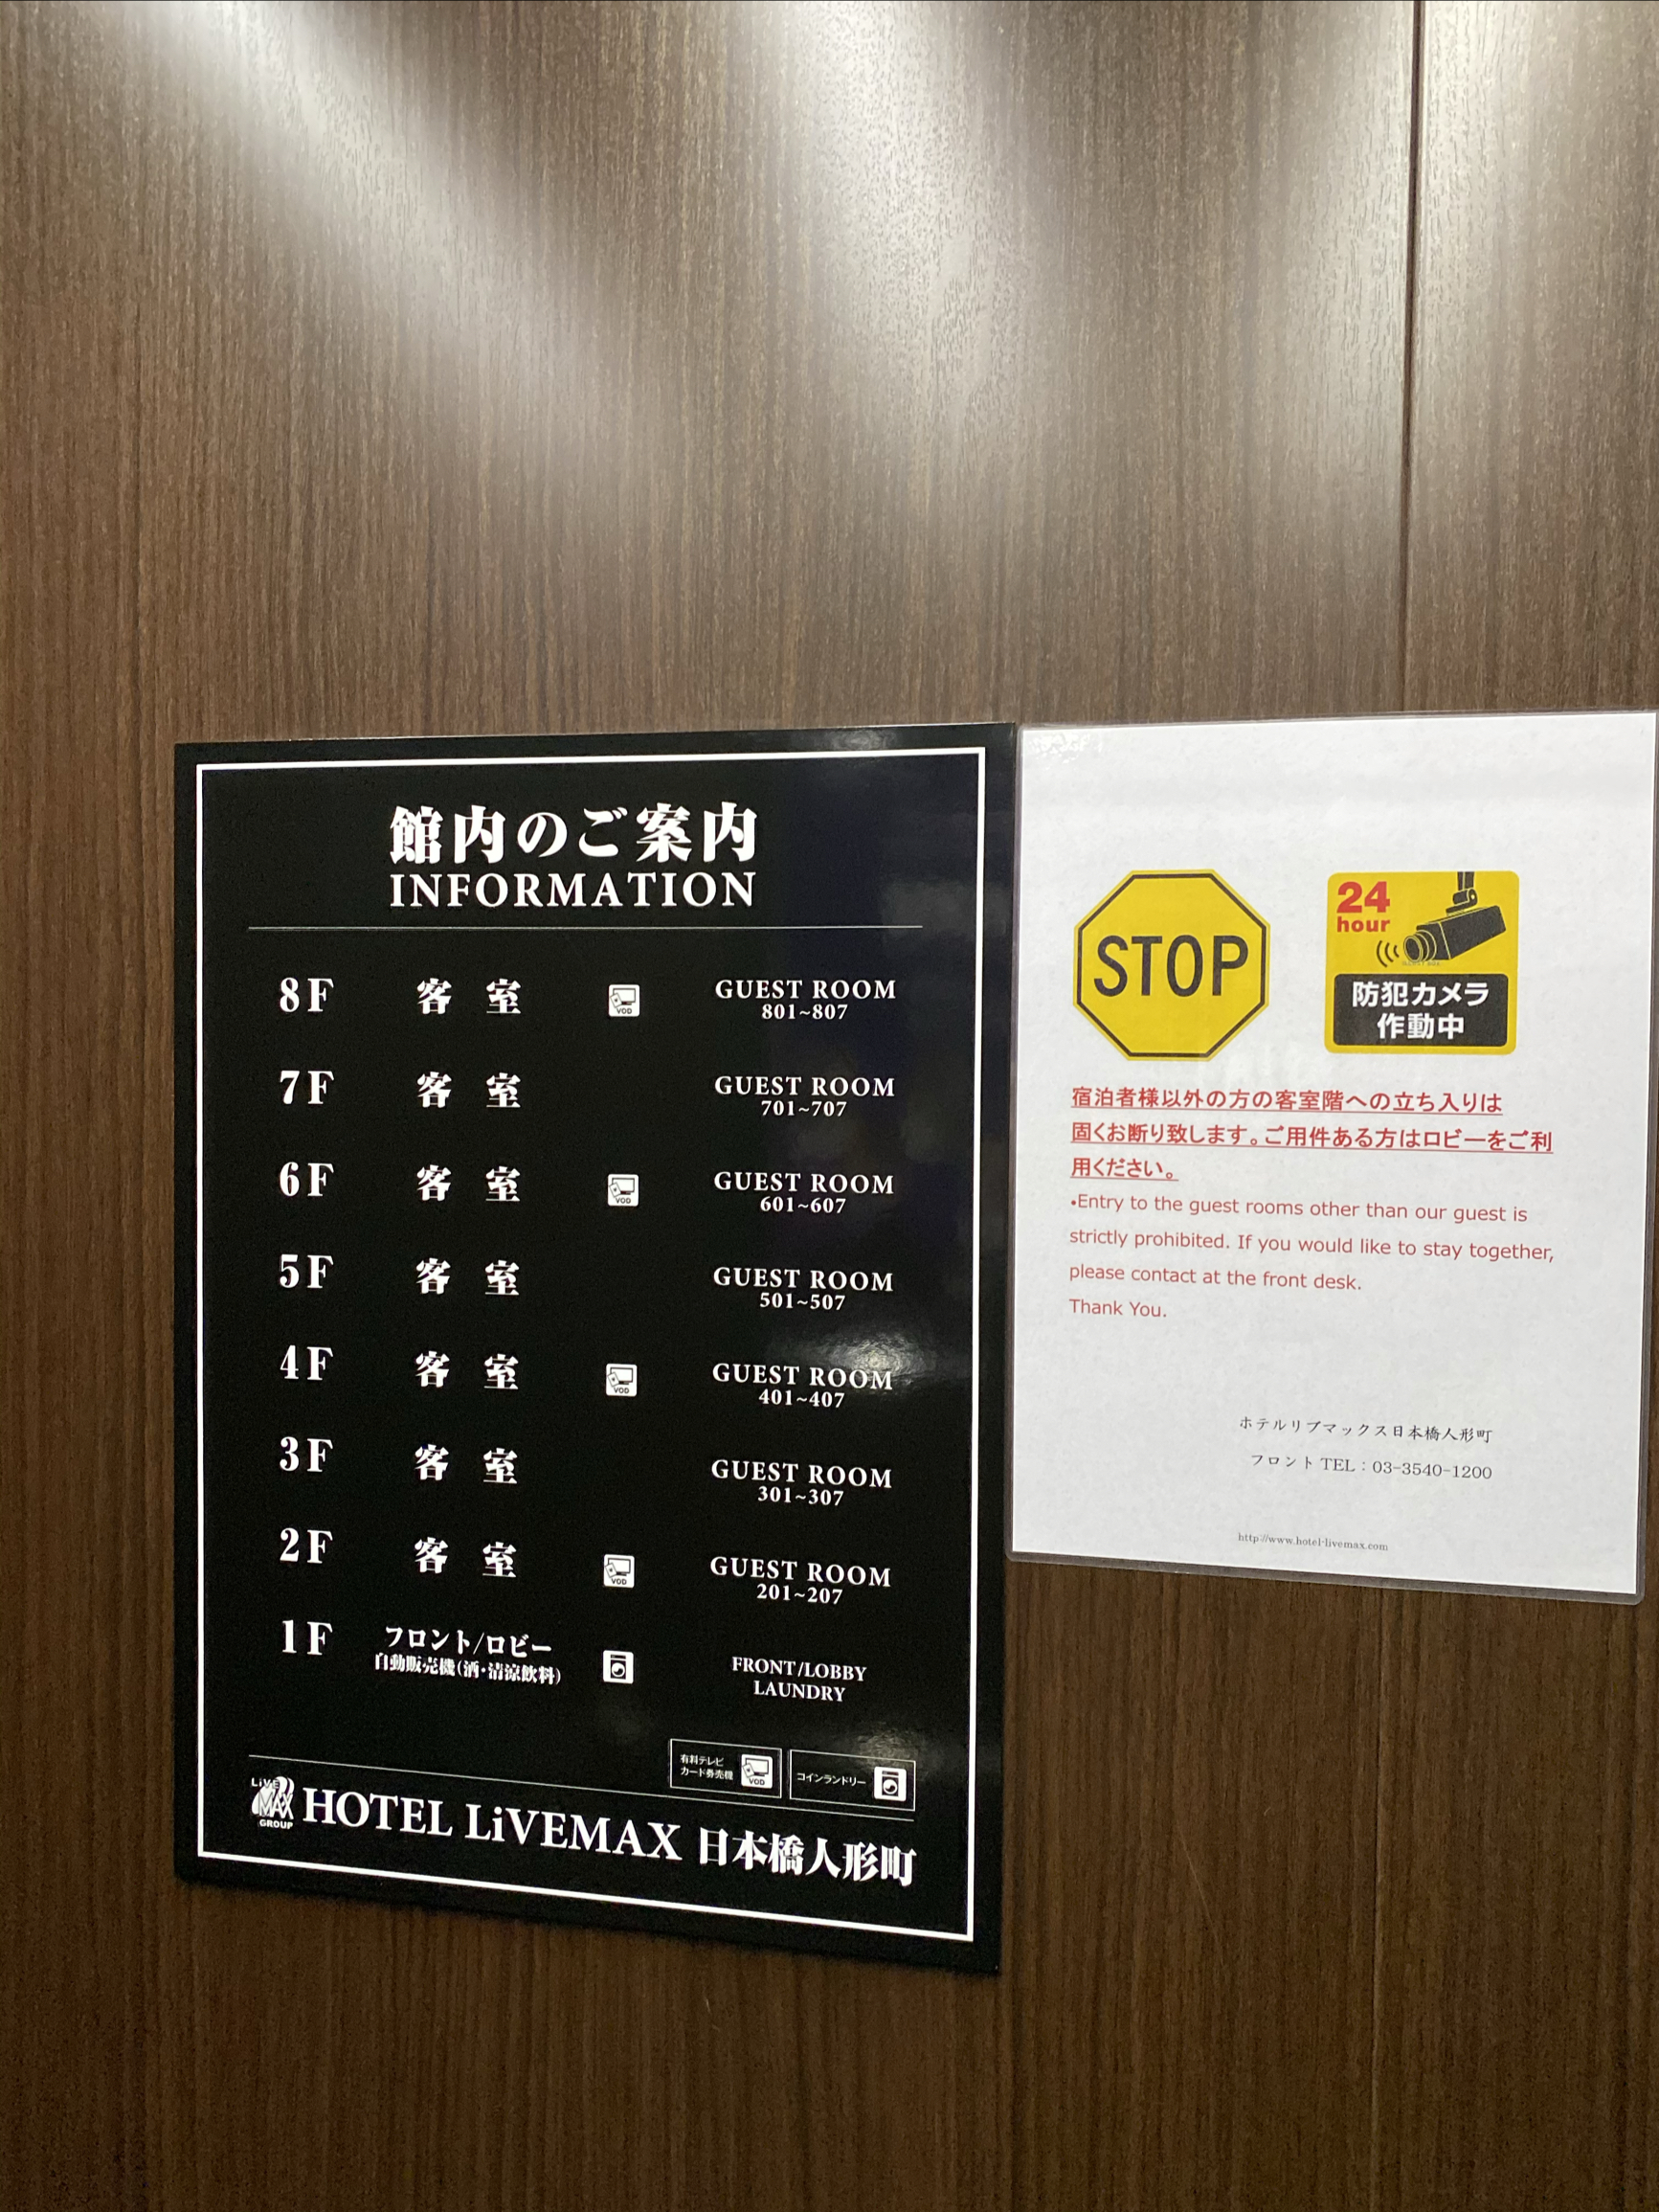 这个酒店应该是我十几次日本行中最小的酒店了，基本没什么活动空间，靠近马路那侧，晚上车声音太大了，睡眠